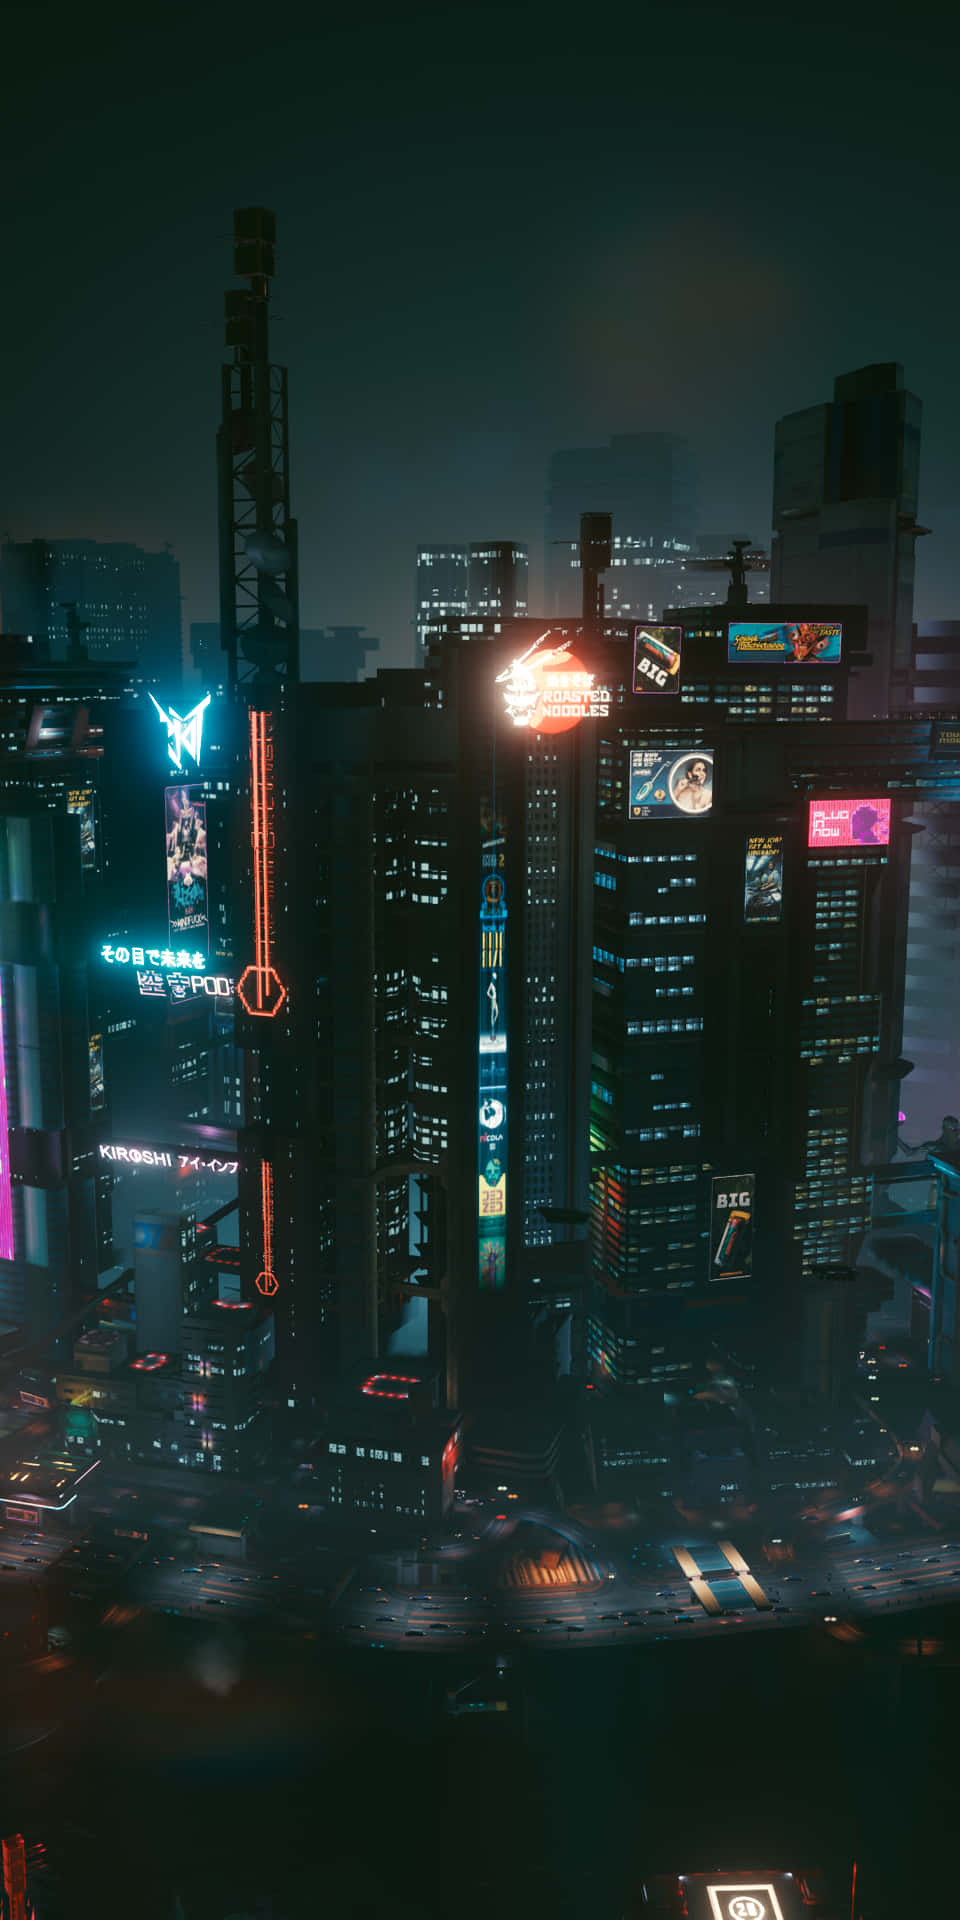 Bienvenidosa Cyberpunk Night City, Un Paisaje Urbano Lleno De Aventura Y Emoción Futurista. Fondo de pantalla